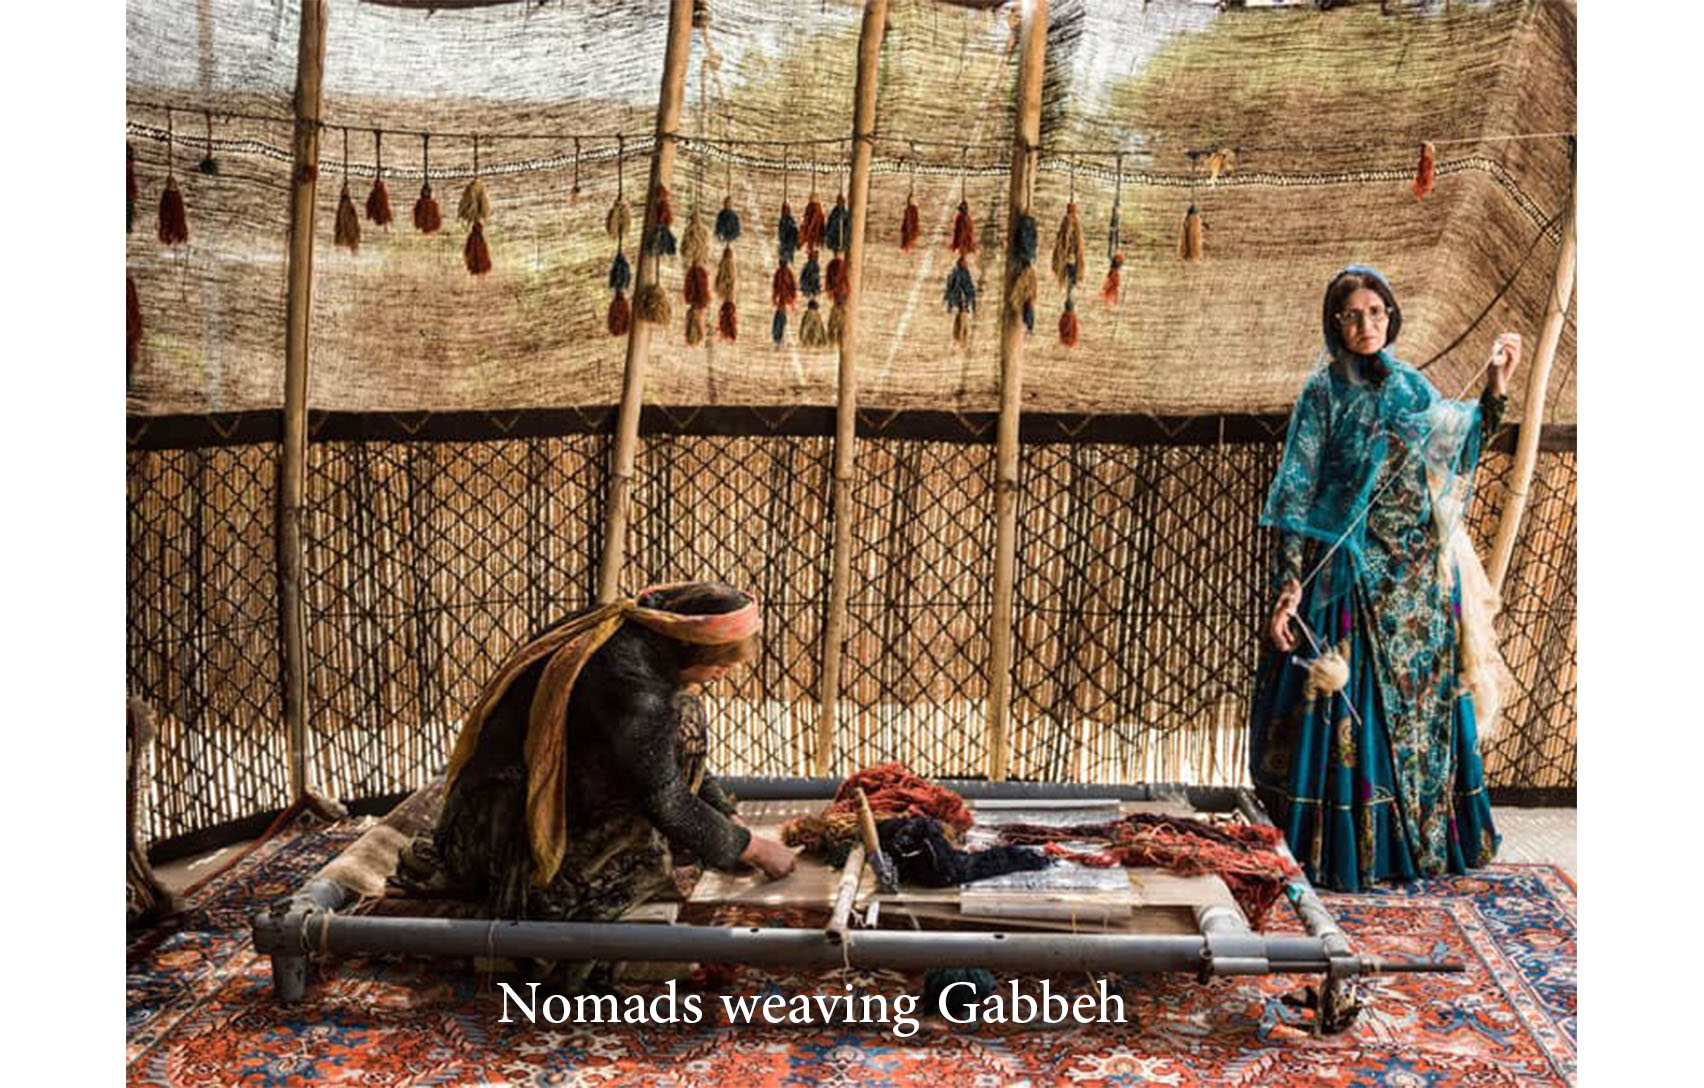 Nomads weaving Gabbeh